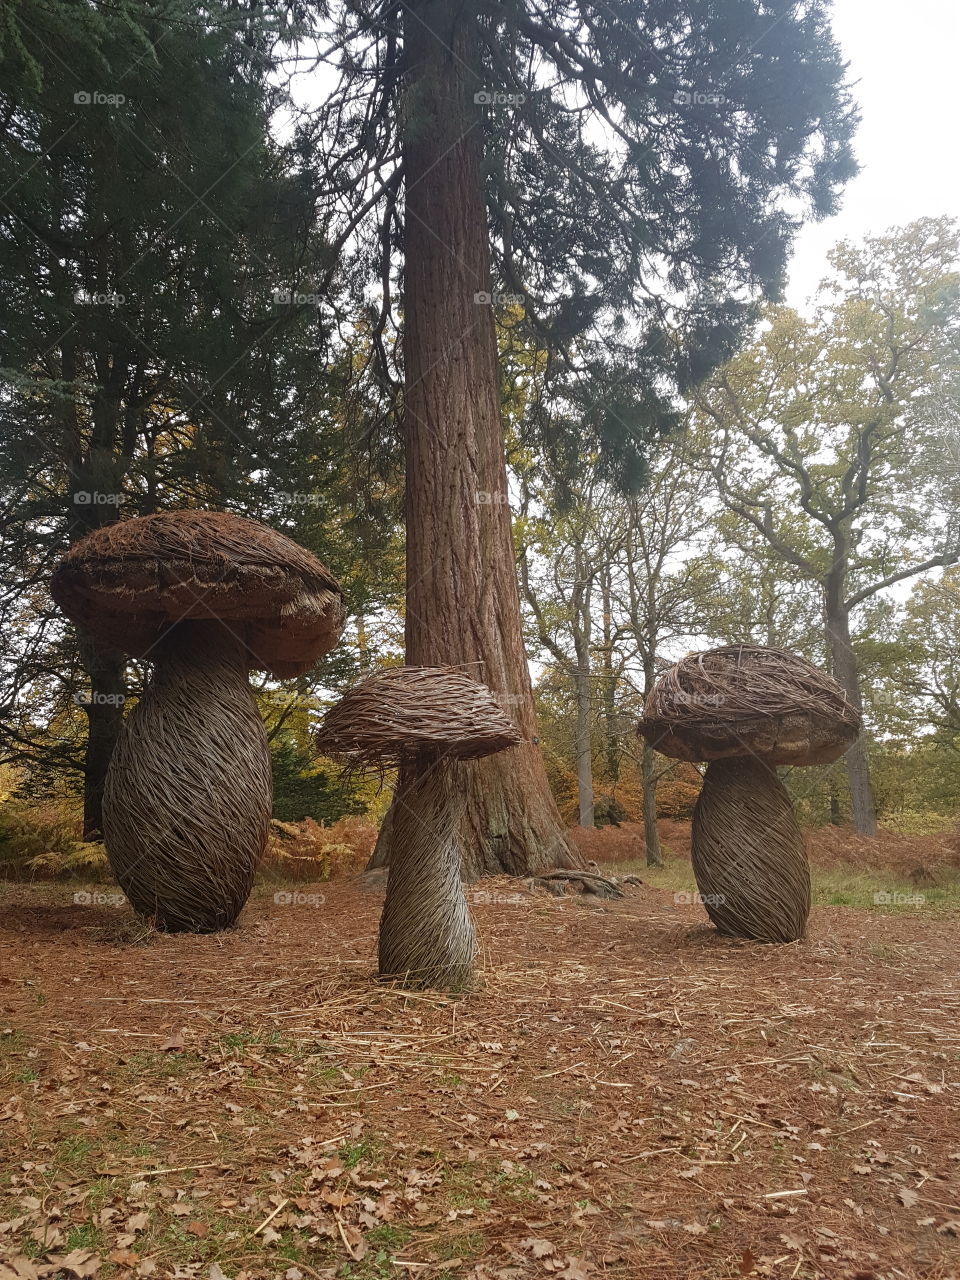 lifesized mushrooms